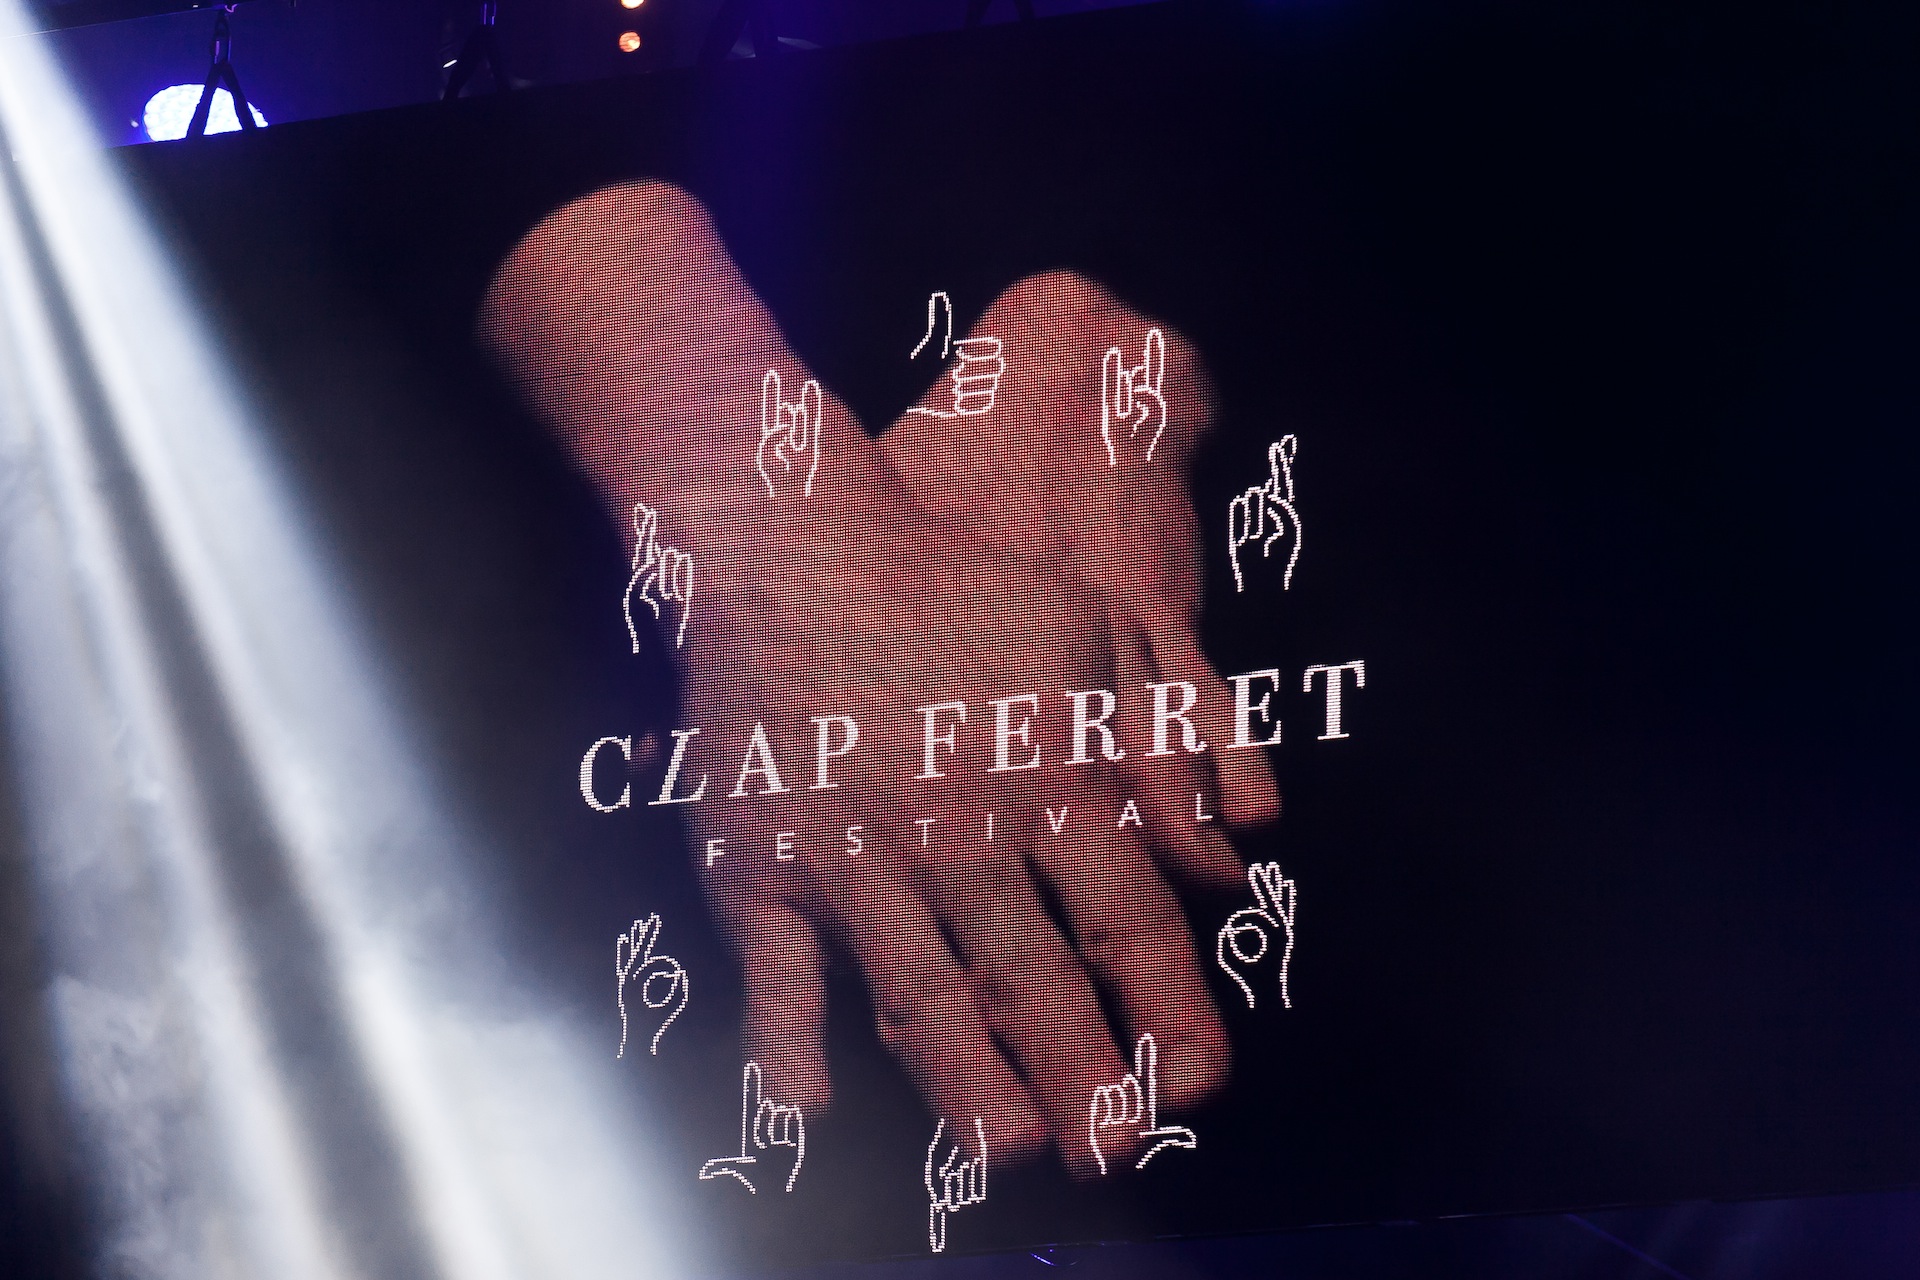 Le festival Clap Ferret, le 4 septembre 2015 - photo 34